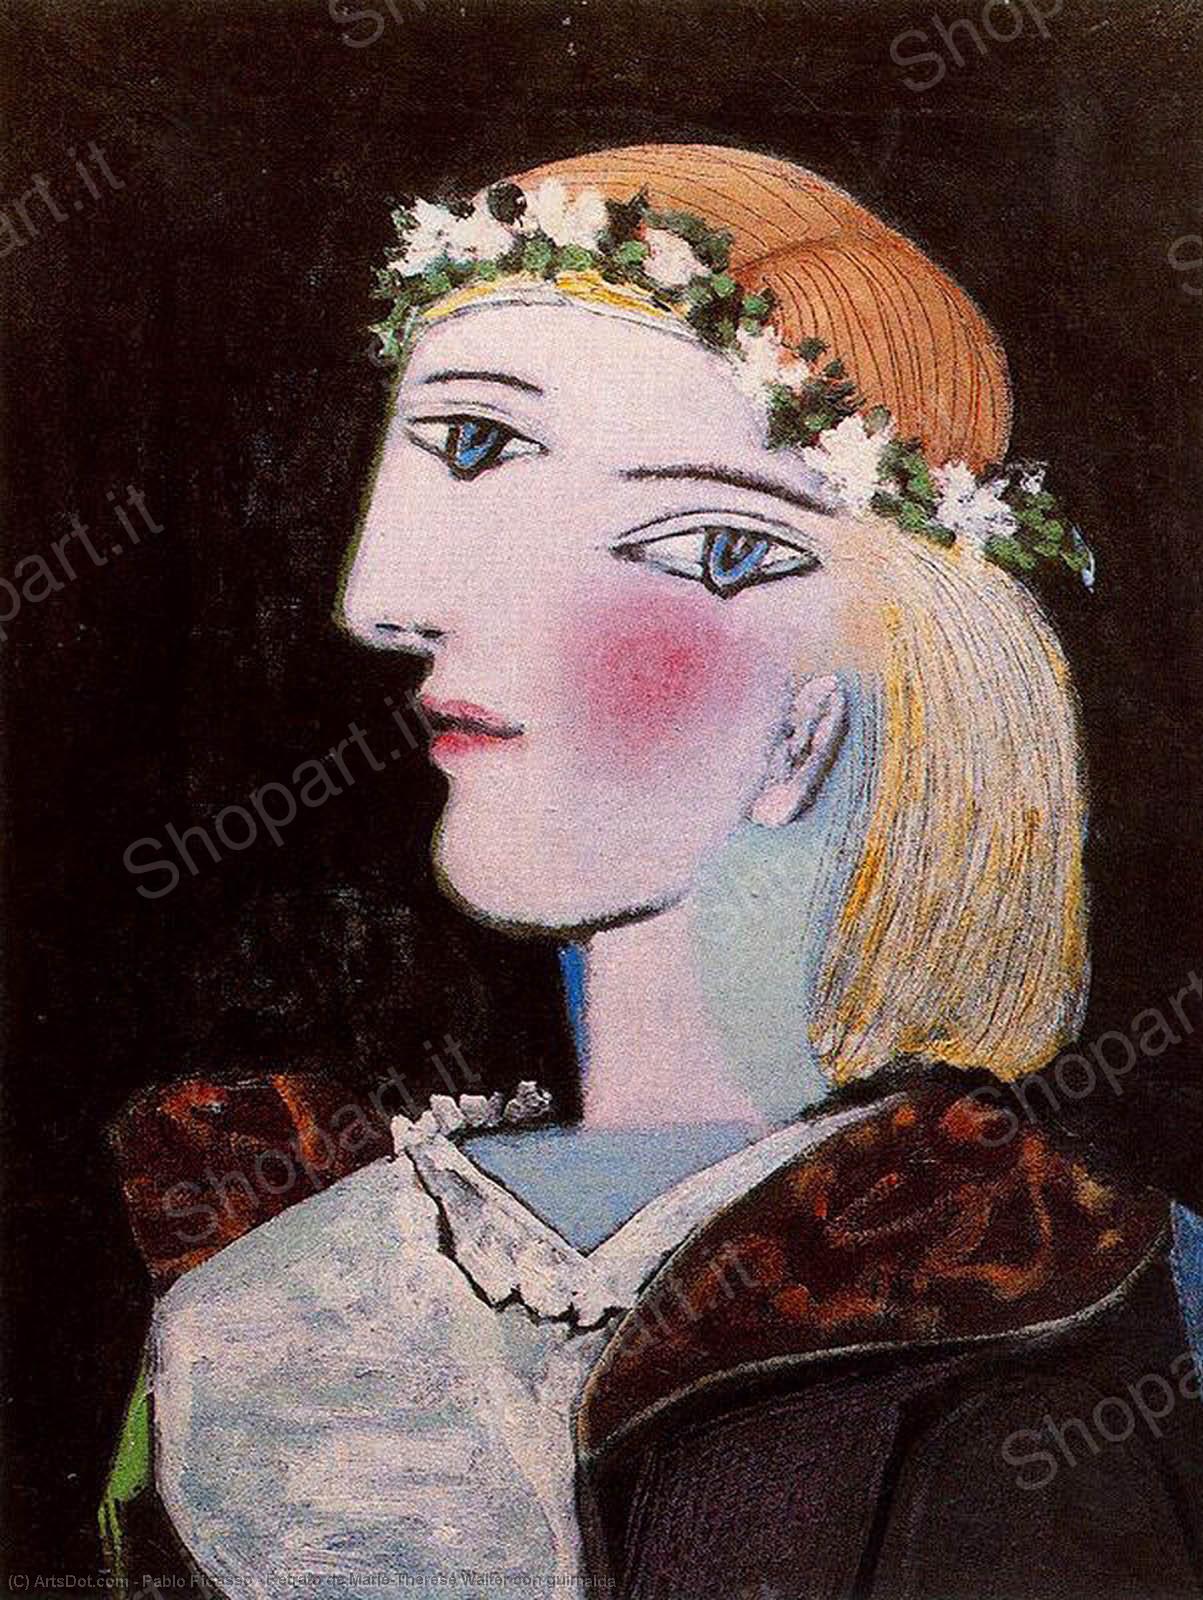 Wikoo.org - موسوعة الفنون الجميلة - اللوحة، العمل الفني Pablo Picasso - Retrato de Marie-Thérèse Walter con guirnalda